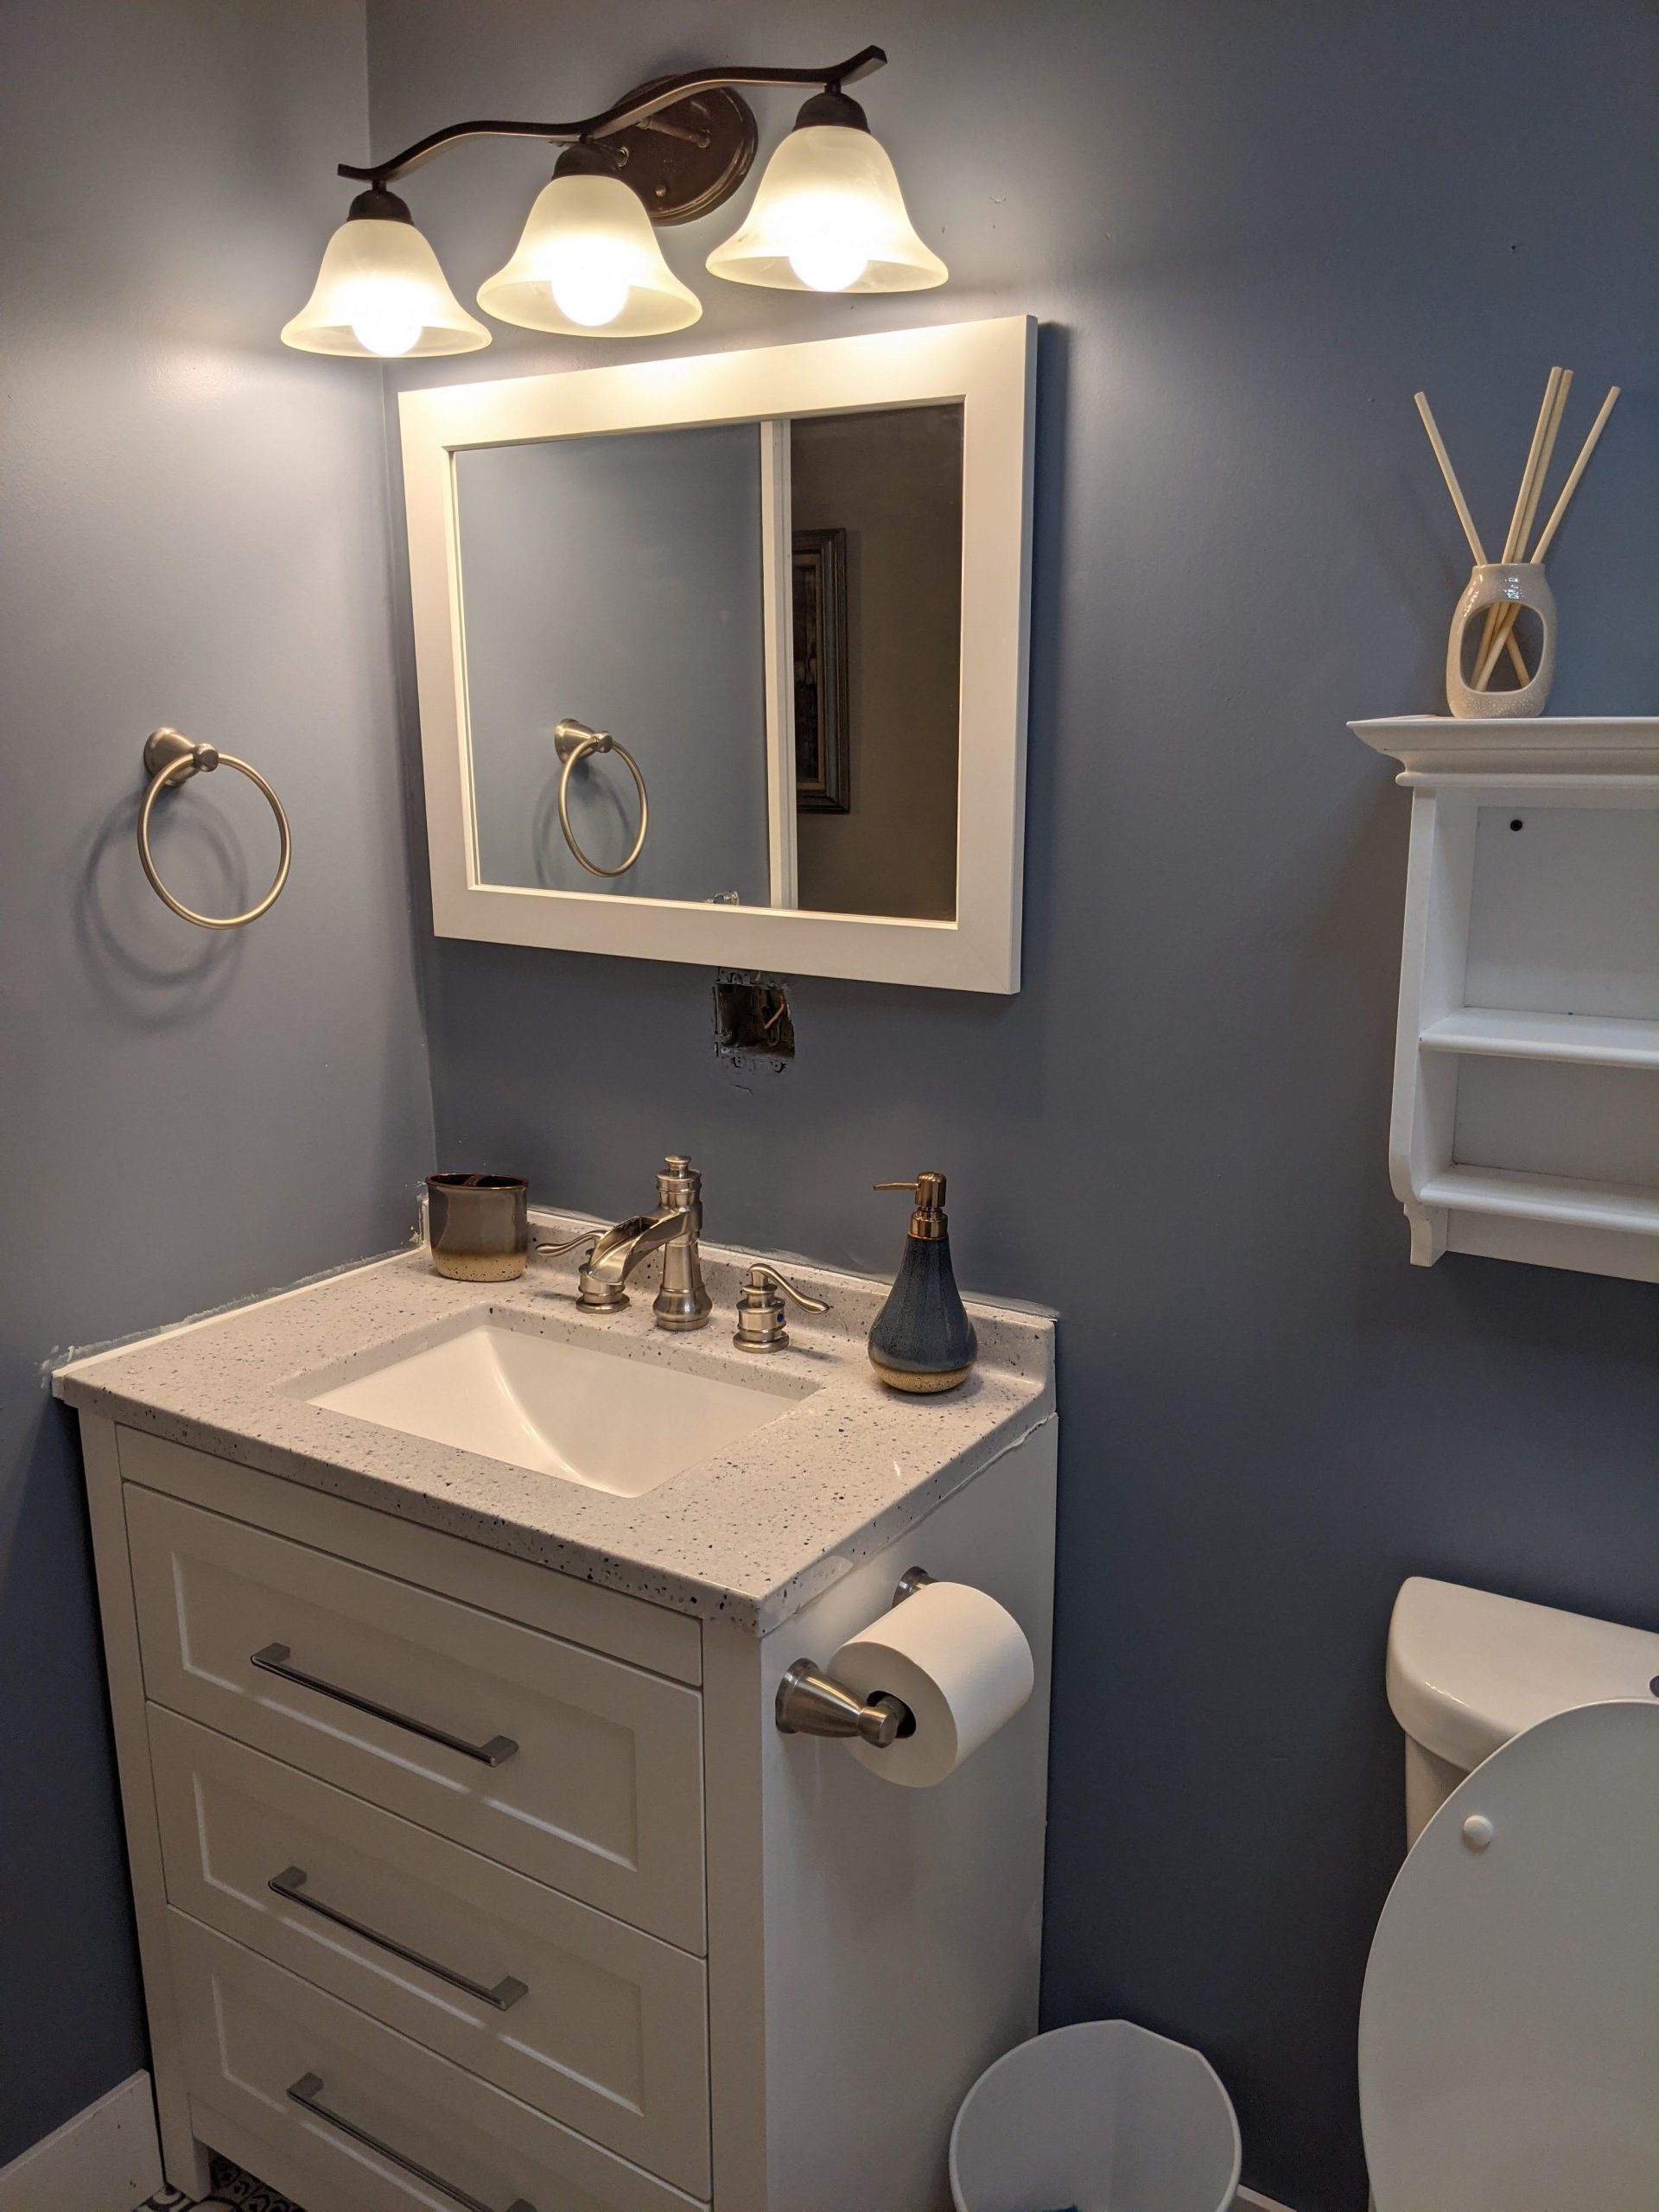 Room 5 bathroom vanity